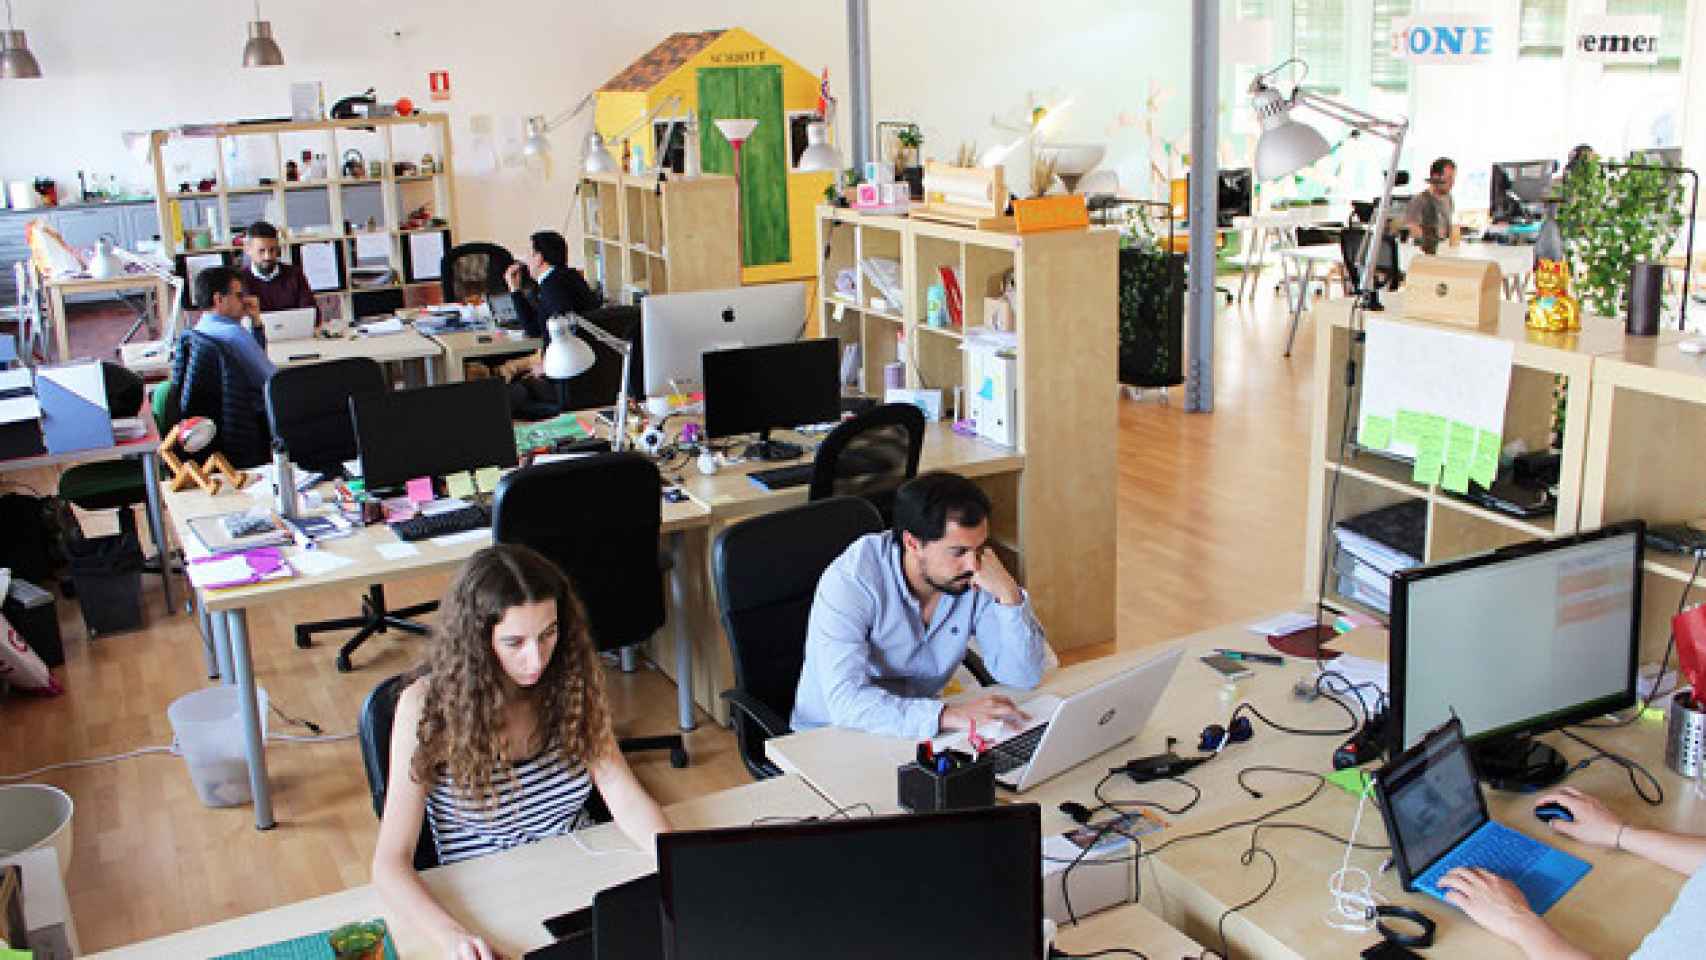 Oficina Induct en el distrito de Gràcia de Barcelona, con menos jefes y más trabajo en equipo / CG